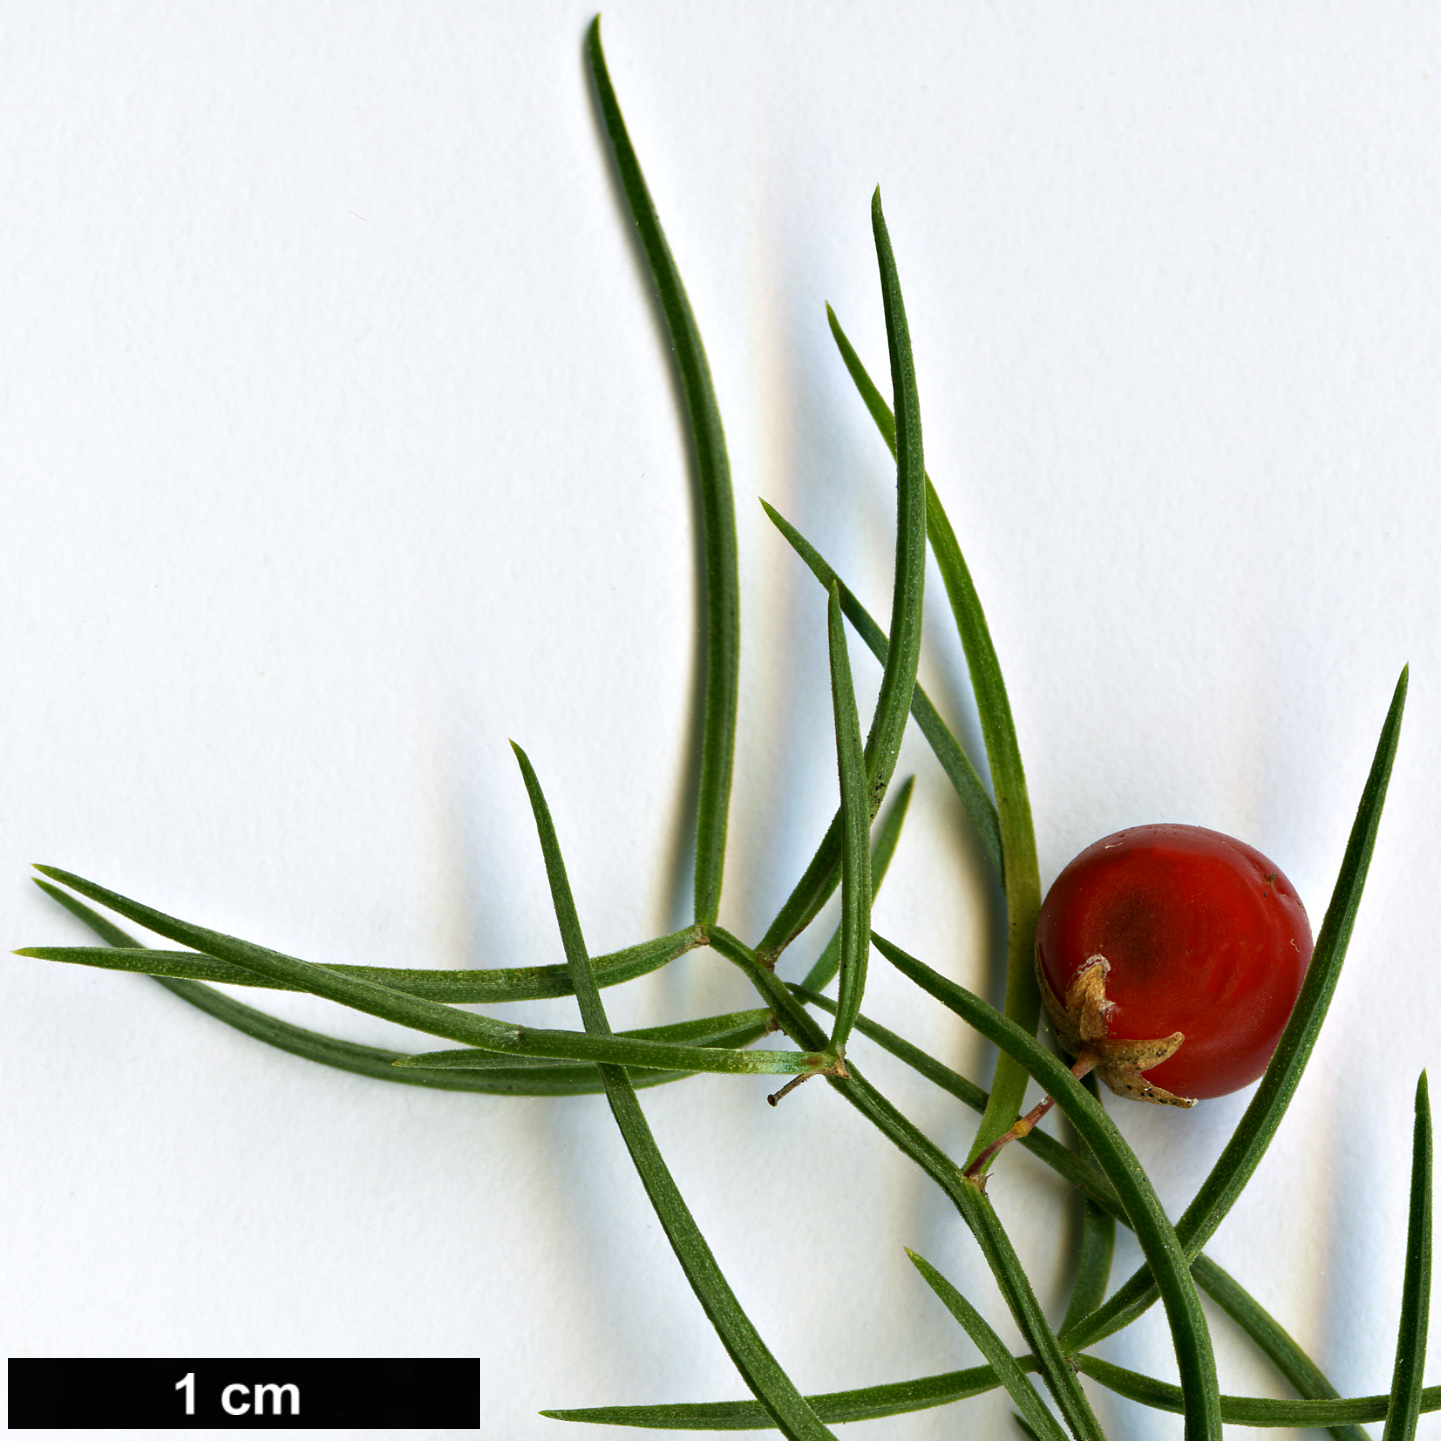 High resolution image: Family: Asparagaceae - Genus: Asparagus - Taxon: verticillatus